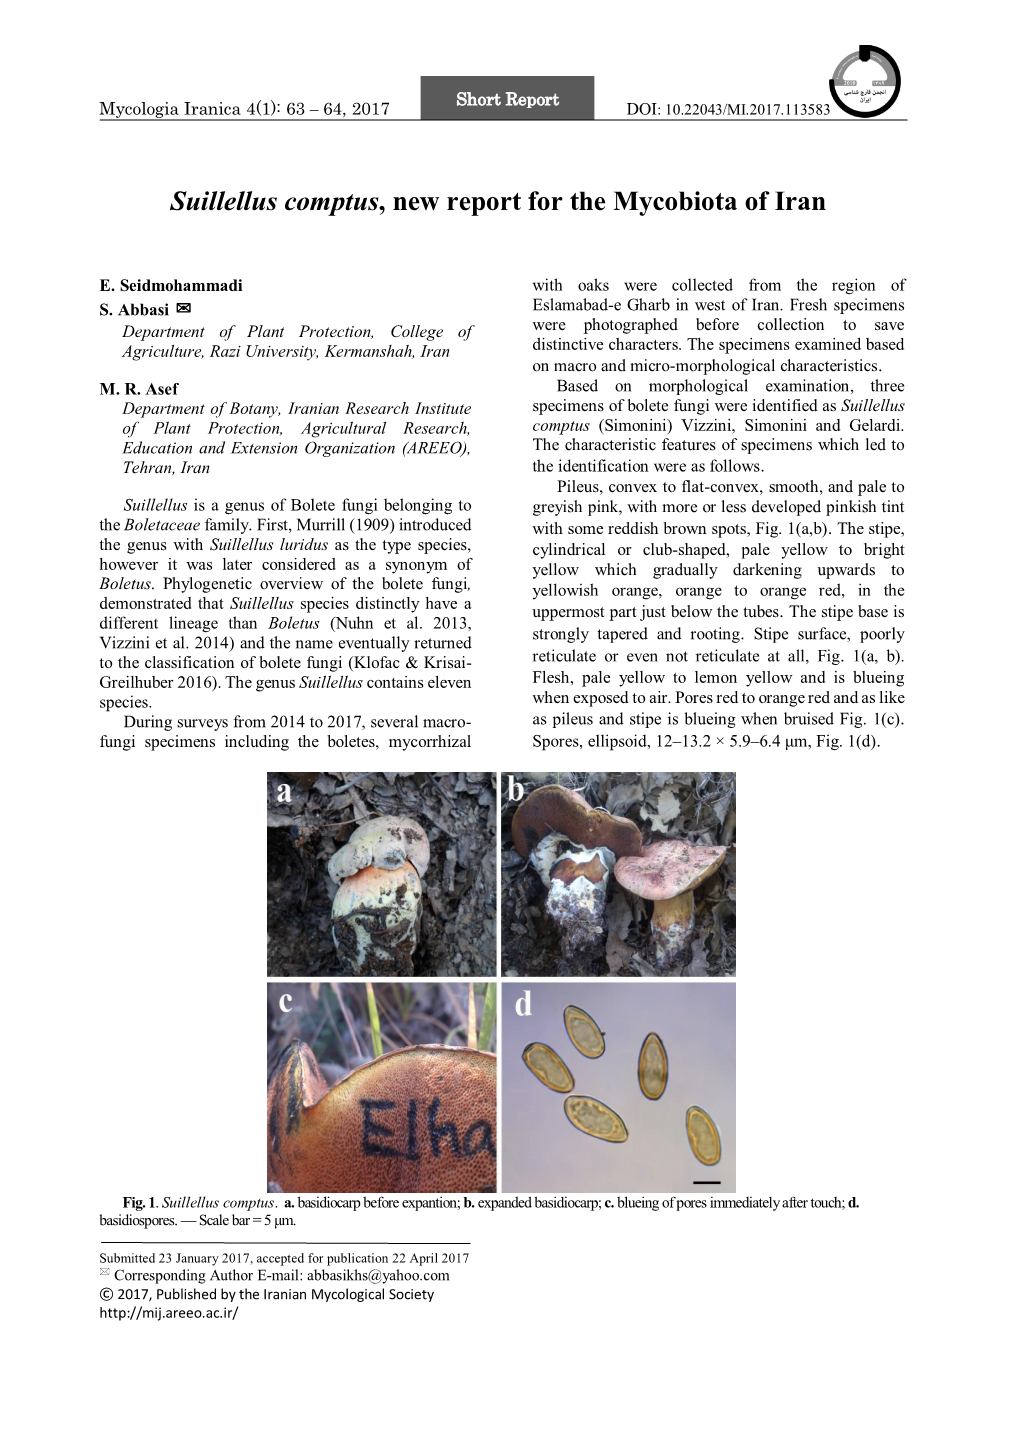 Suillellus Comptus, New Report for the Mycobiota of Iran